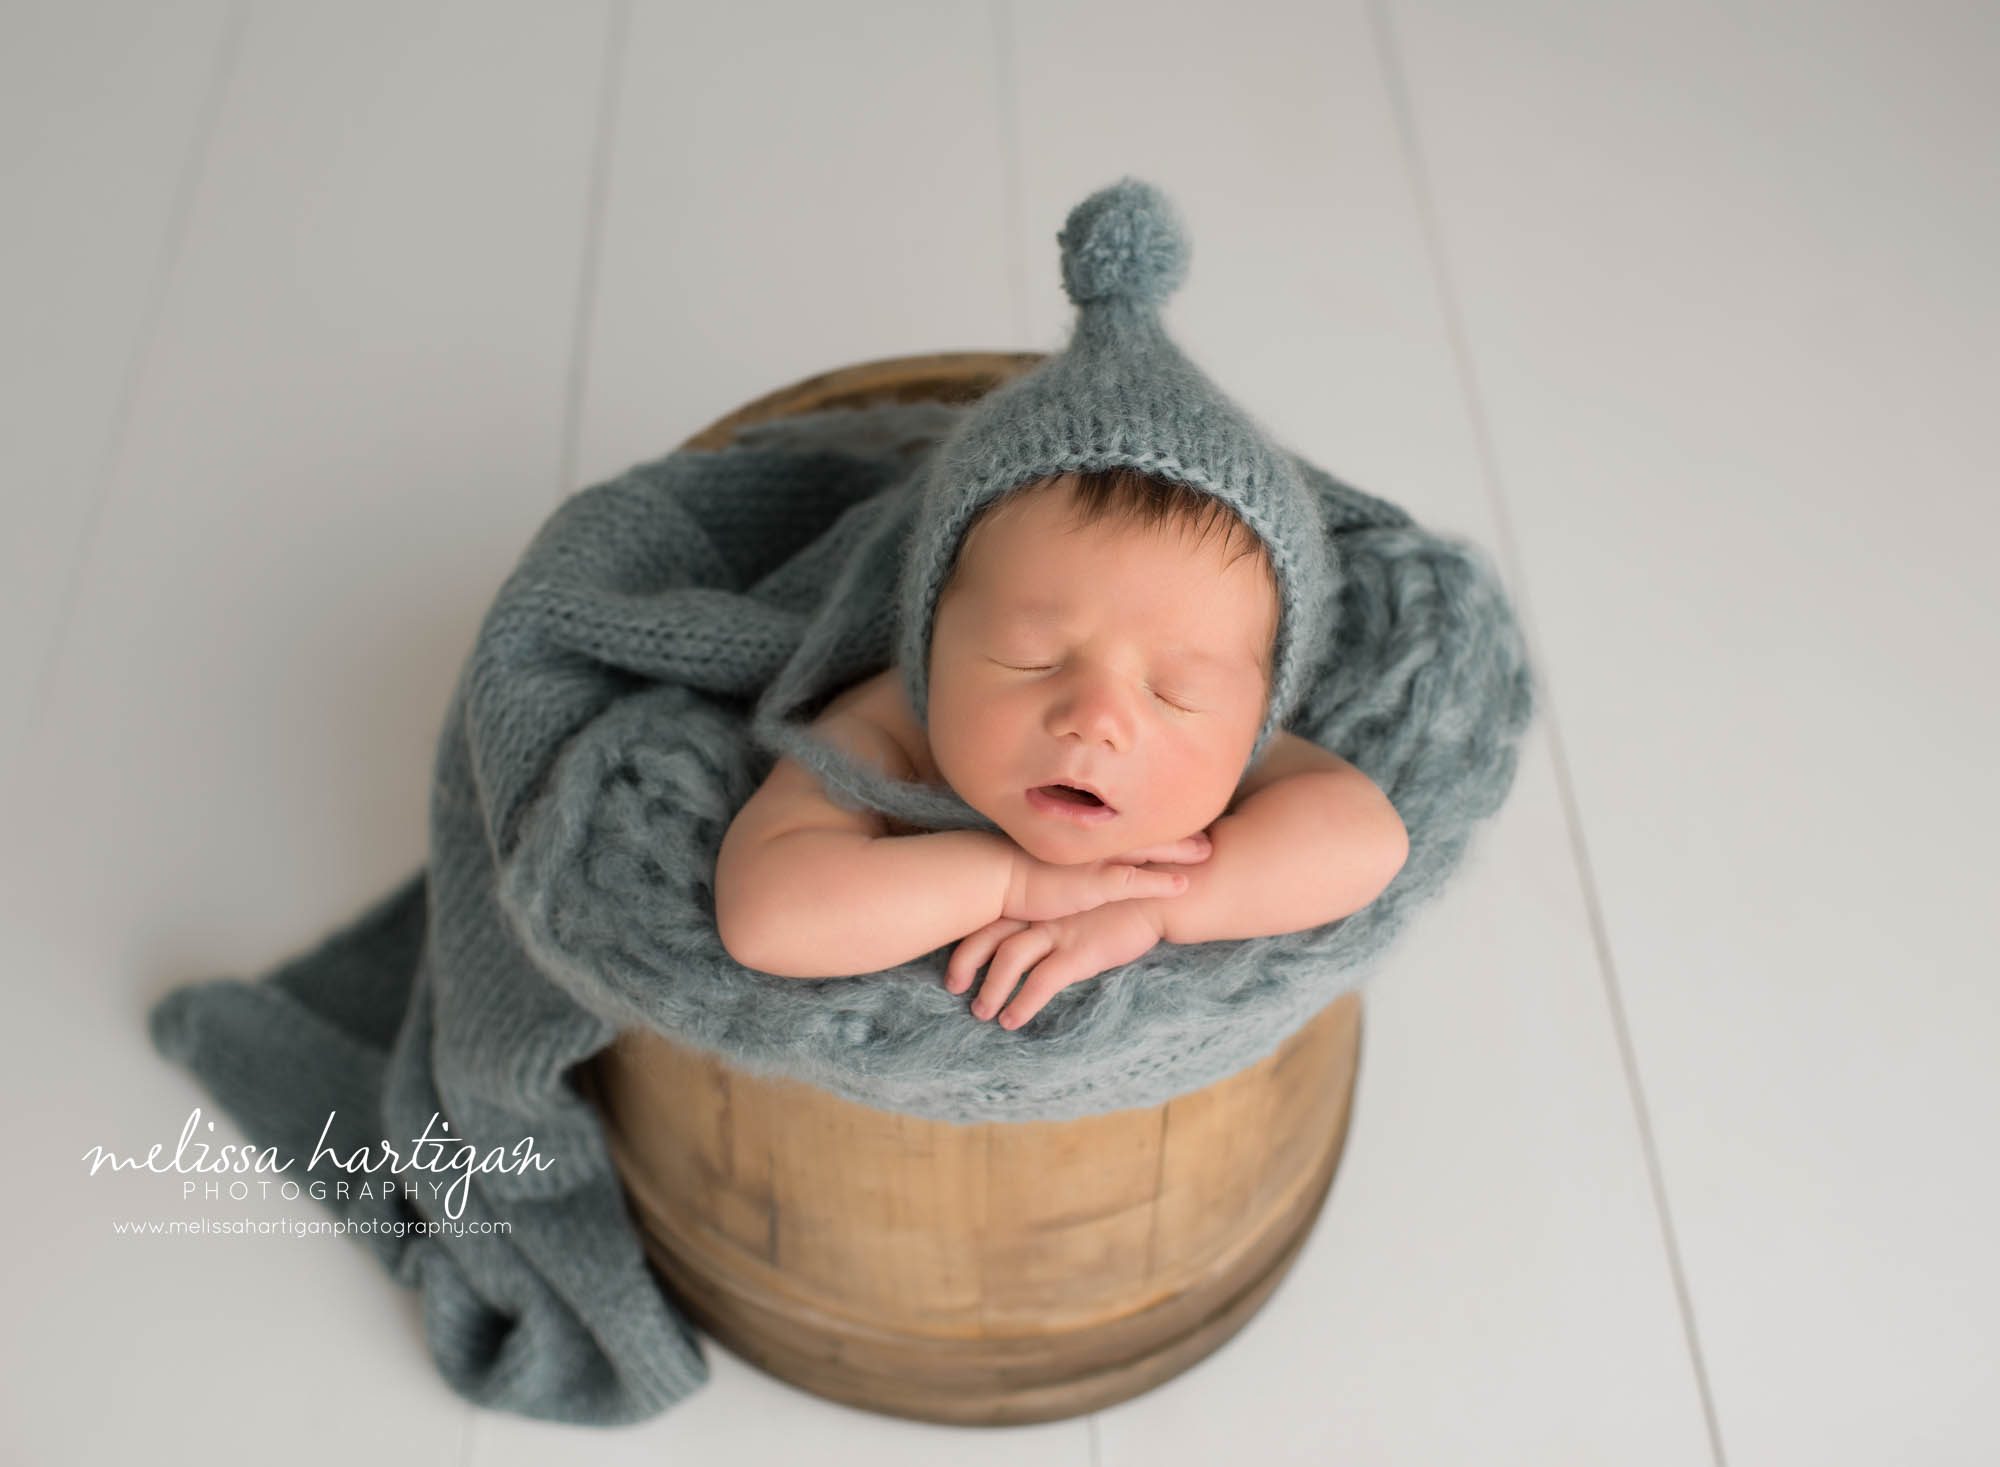 newborn baby boy posed in wooden barrel wearing pom sleepy cap